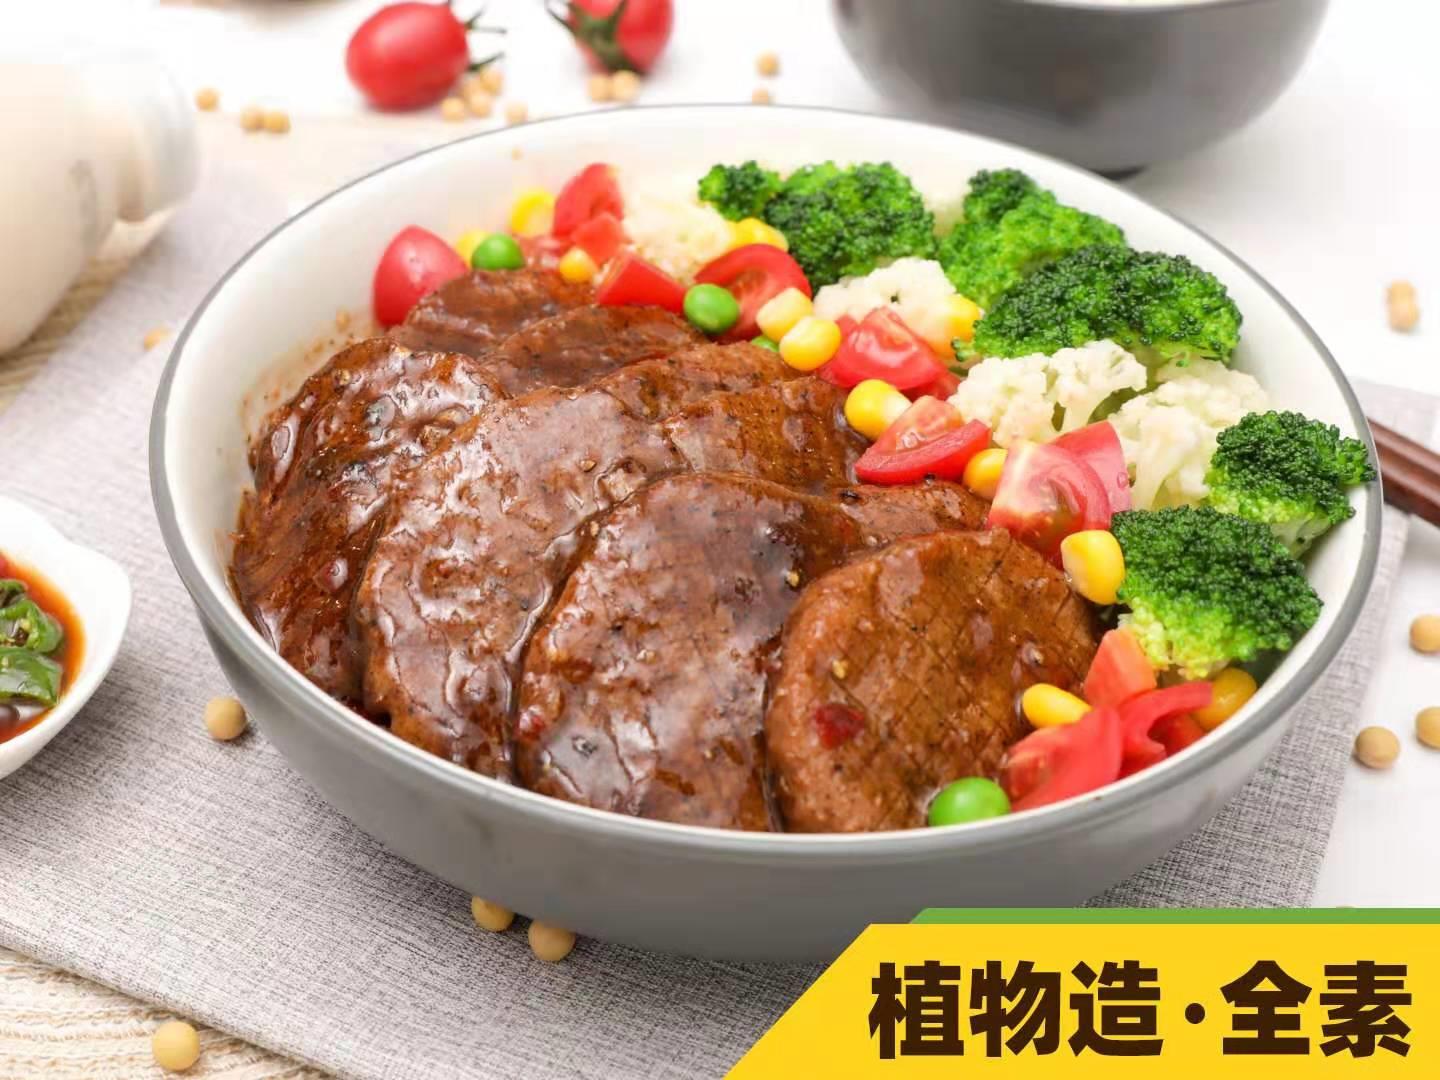 中国植物性食品产业联盟成员单位齐善食品生产的植物肉产品